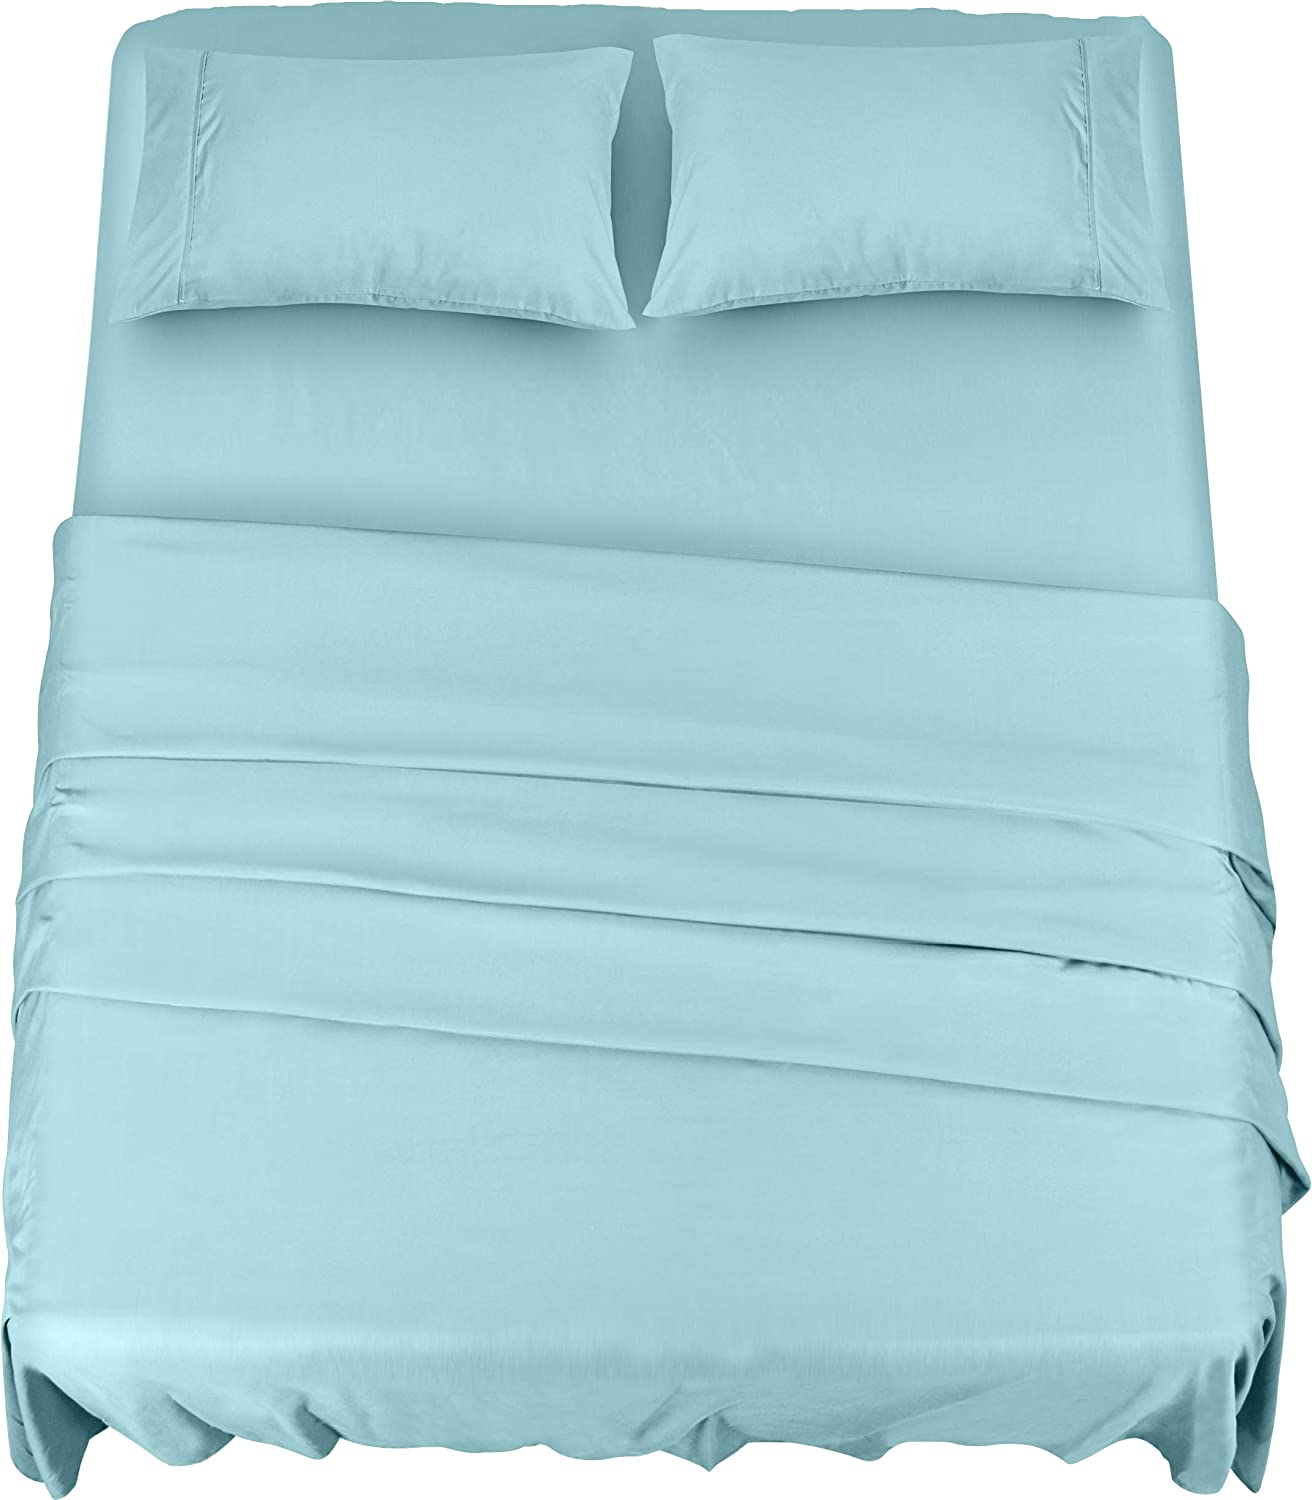 Utopia Bedding Bed Sheet Set - Brushed Microfiber 4 Piece Queen Bedding